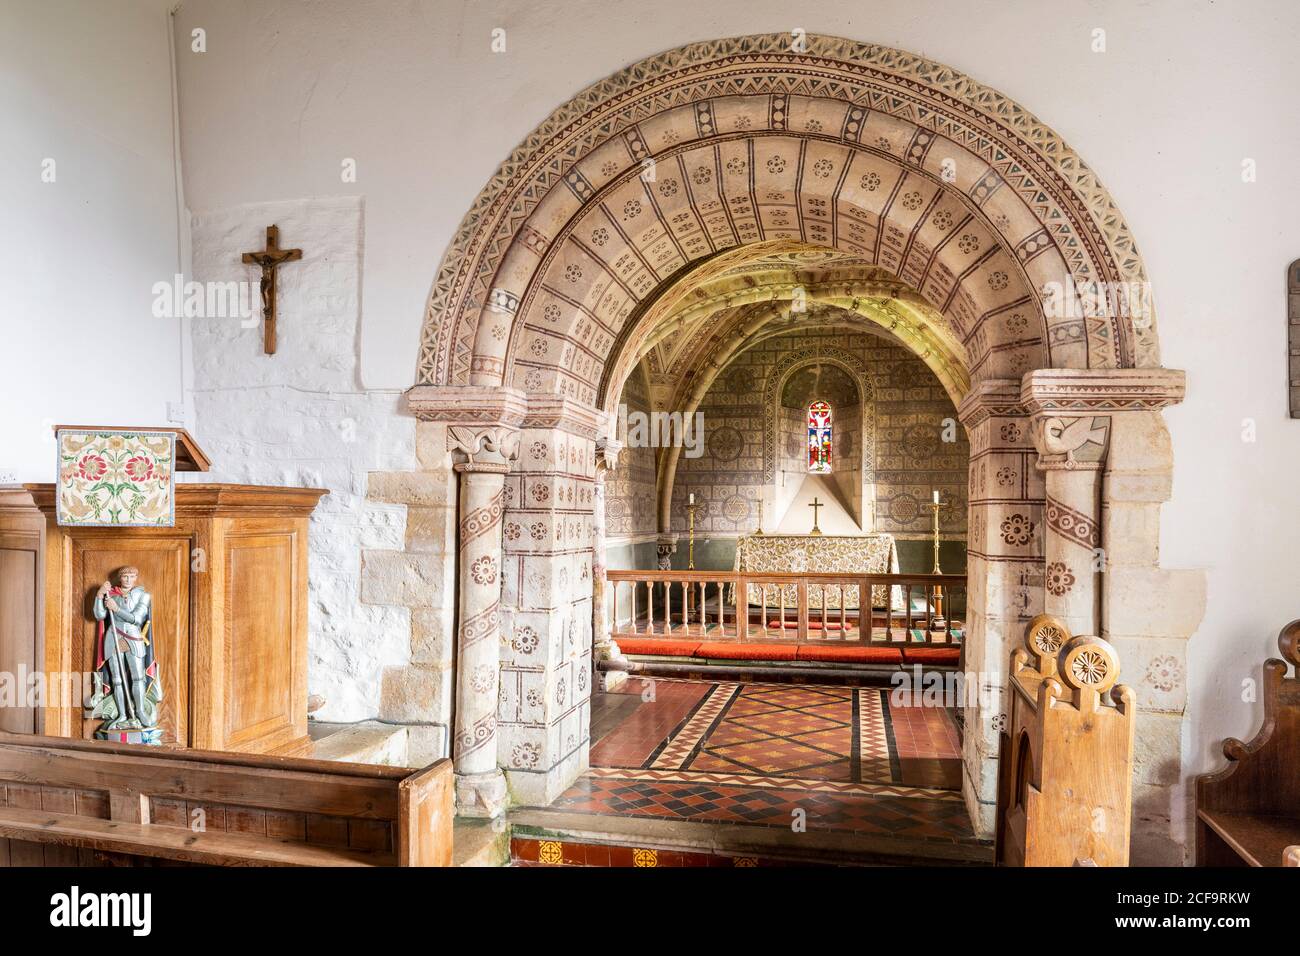 Die normannische Kirche St. George im Cotswold-Dorf Hampnet zeigt den Chor aus dem 12. Jahrhundert, der in den 1870er Jahren vom damaligen Vikar dekoriert wurde. Stockfoto